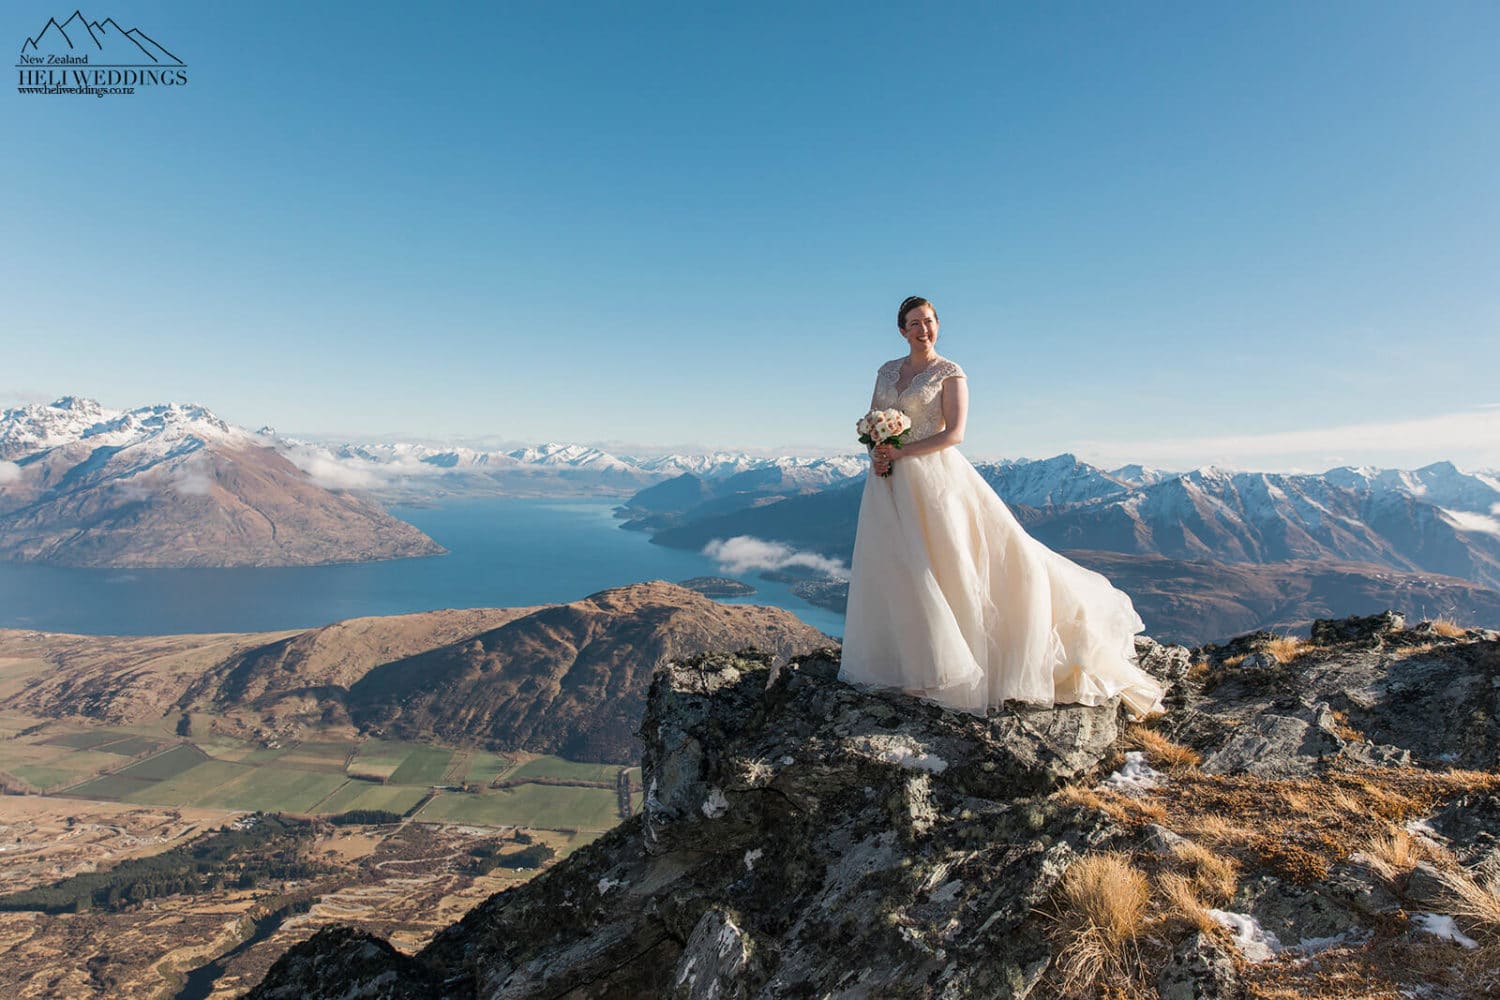 Winter wedding in Queenstown New Zealand, NZ Wedding packages